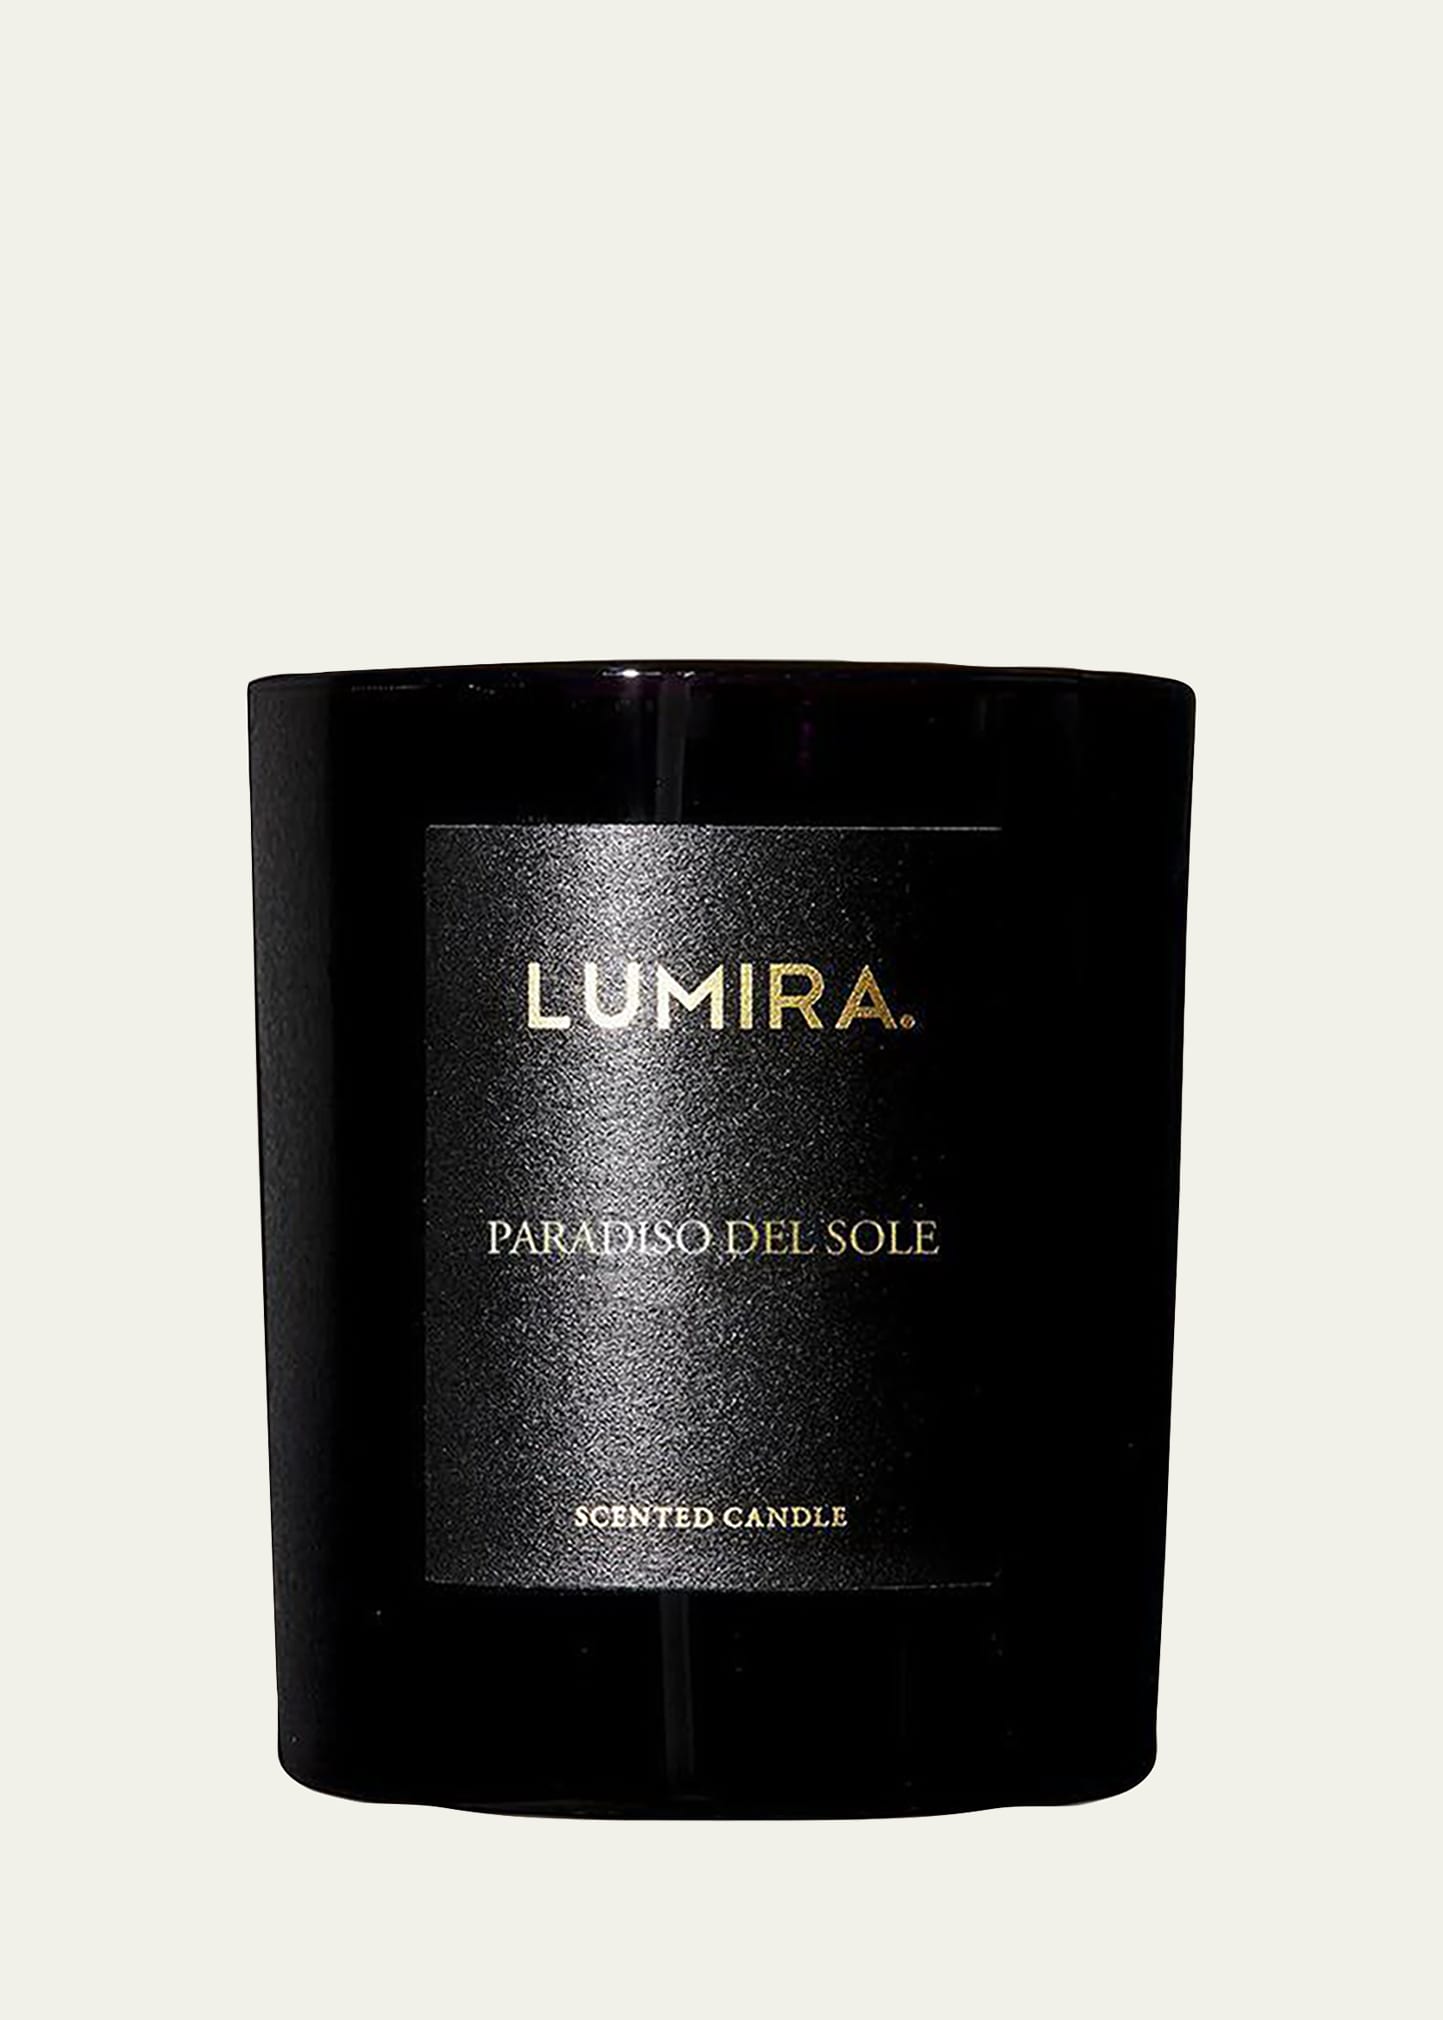 Lumira Paradiso Del Sole Candle, 10.5 Oz.